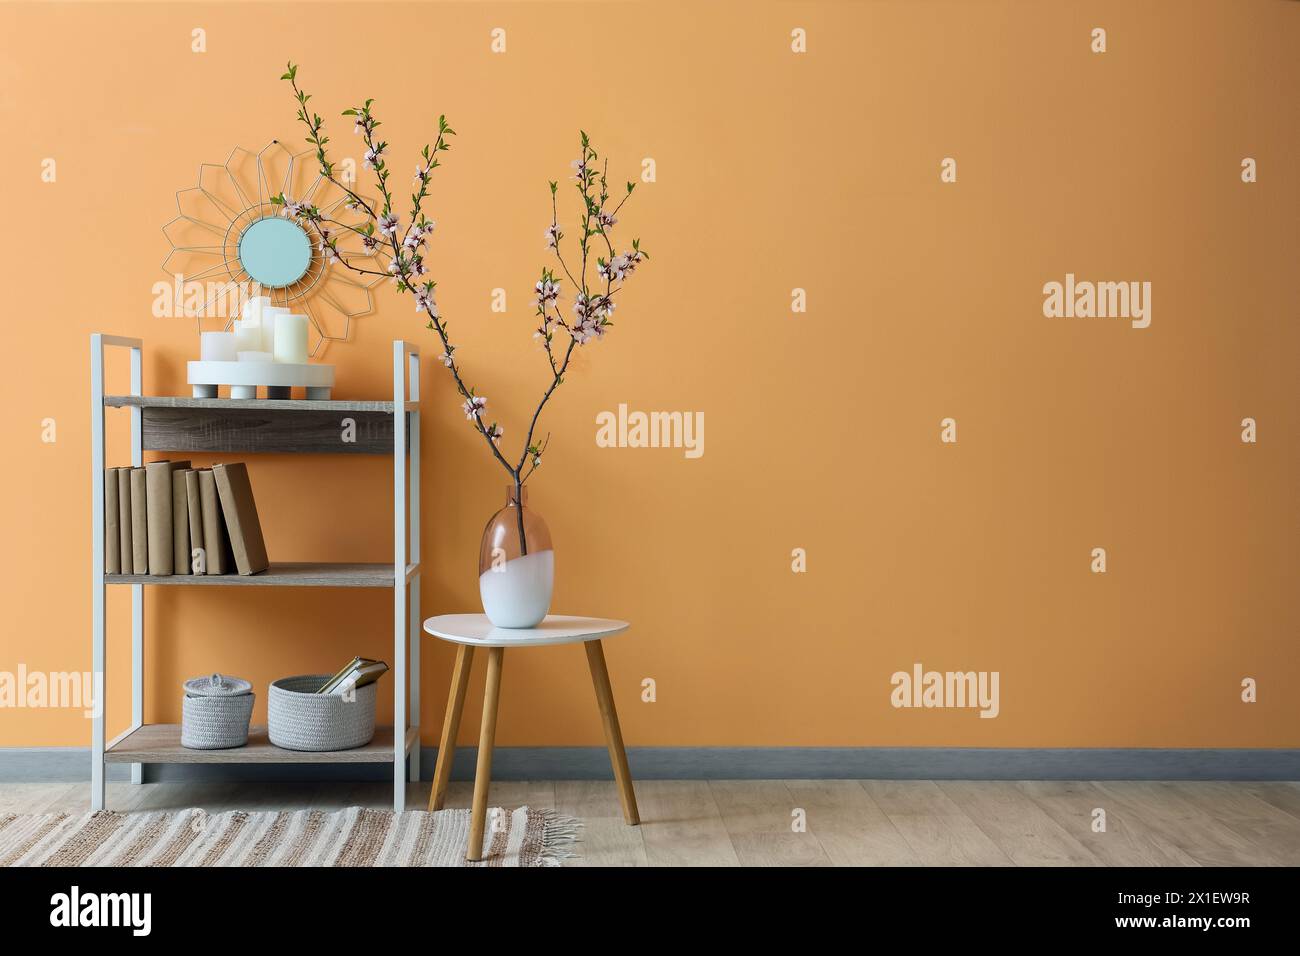 Vase mit blühenden Zweigen auf Couchtisch und Regalfach in der Nähe der beigefarbenen Wand Stockfoto